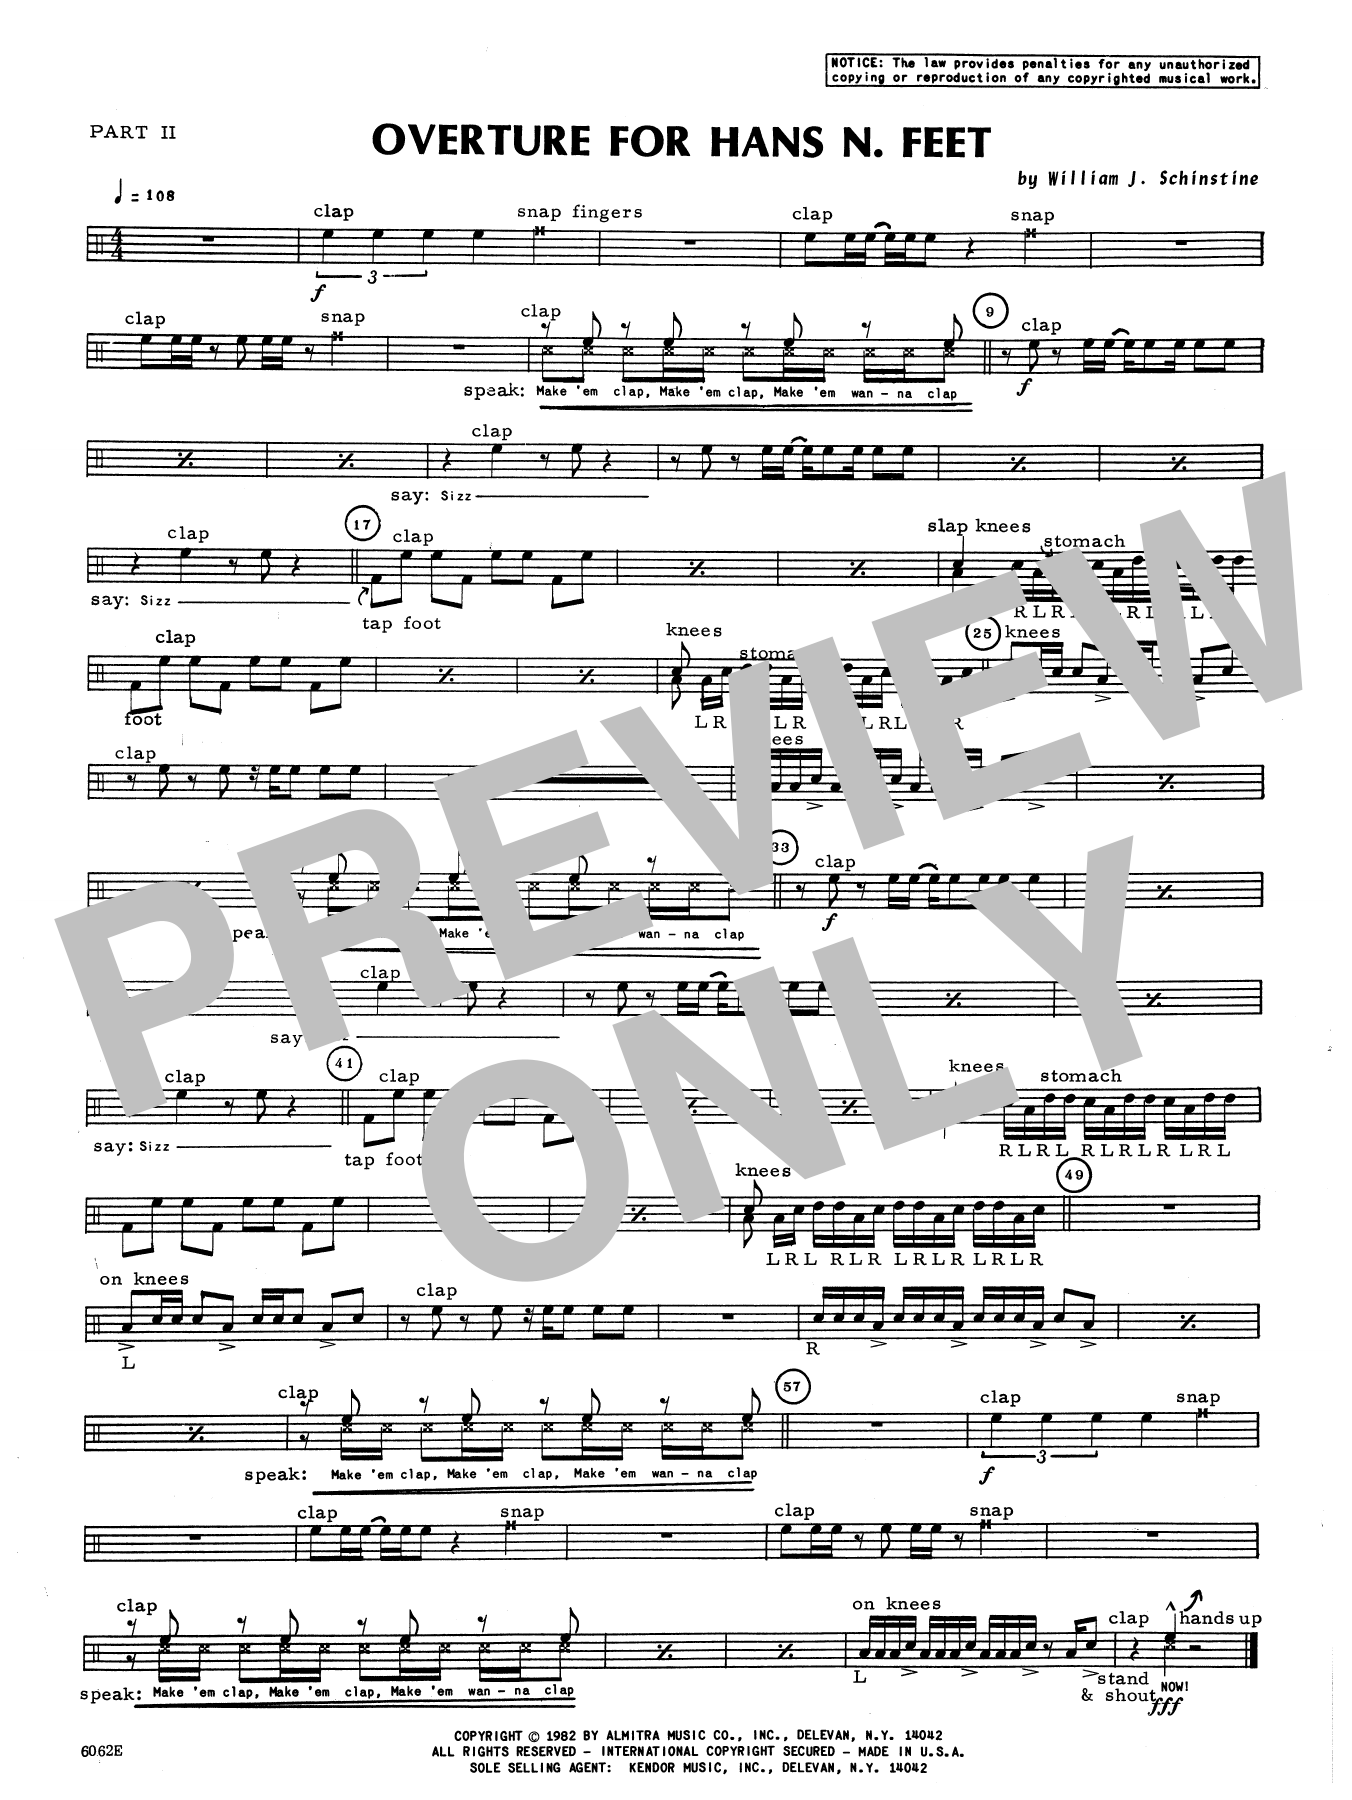 Download William Schinstine Overture For Hans N. Feet - Part 2 Sheet Music